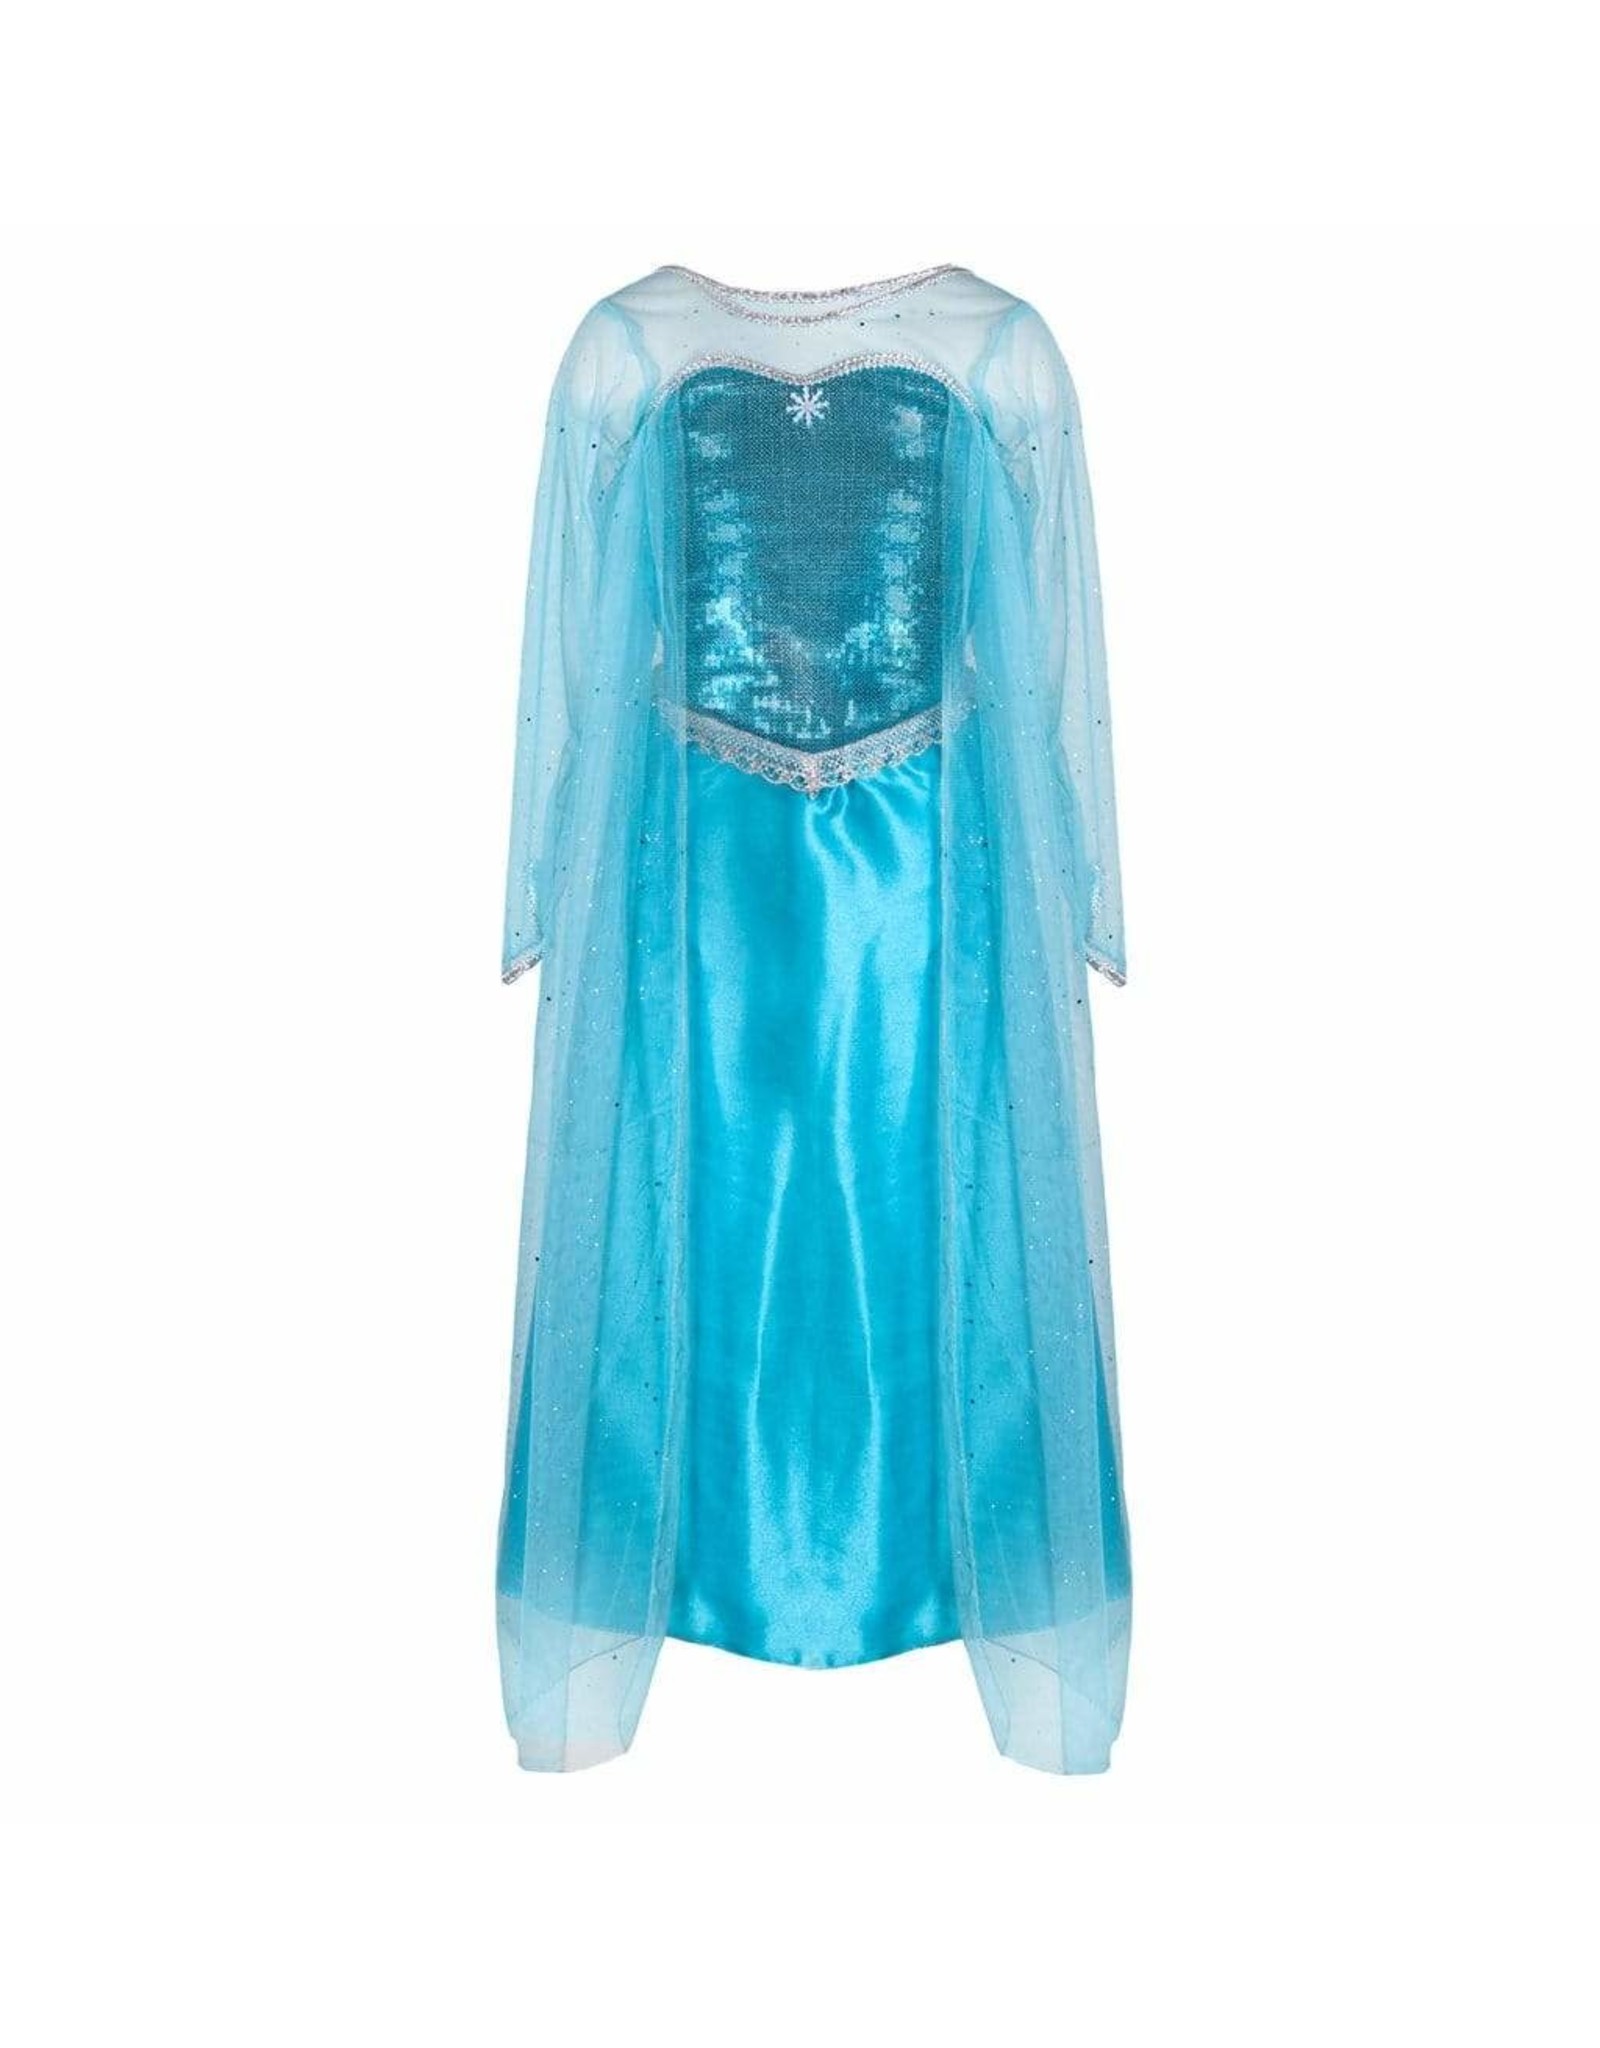 Great Pretenders Ice Queen Dress, Size 3/4